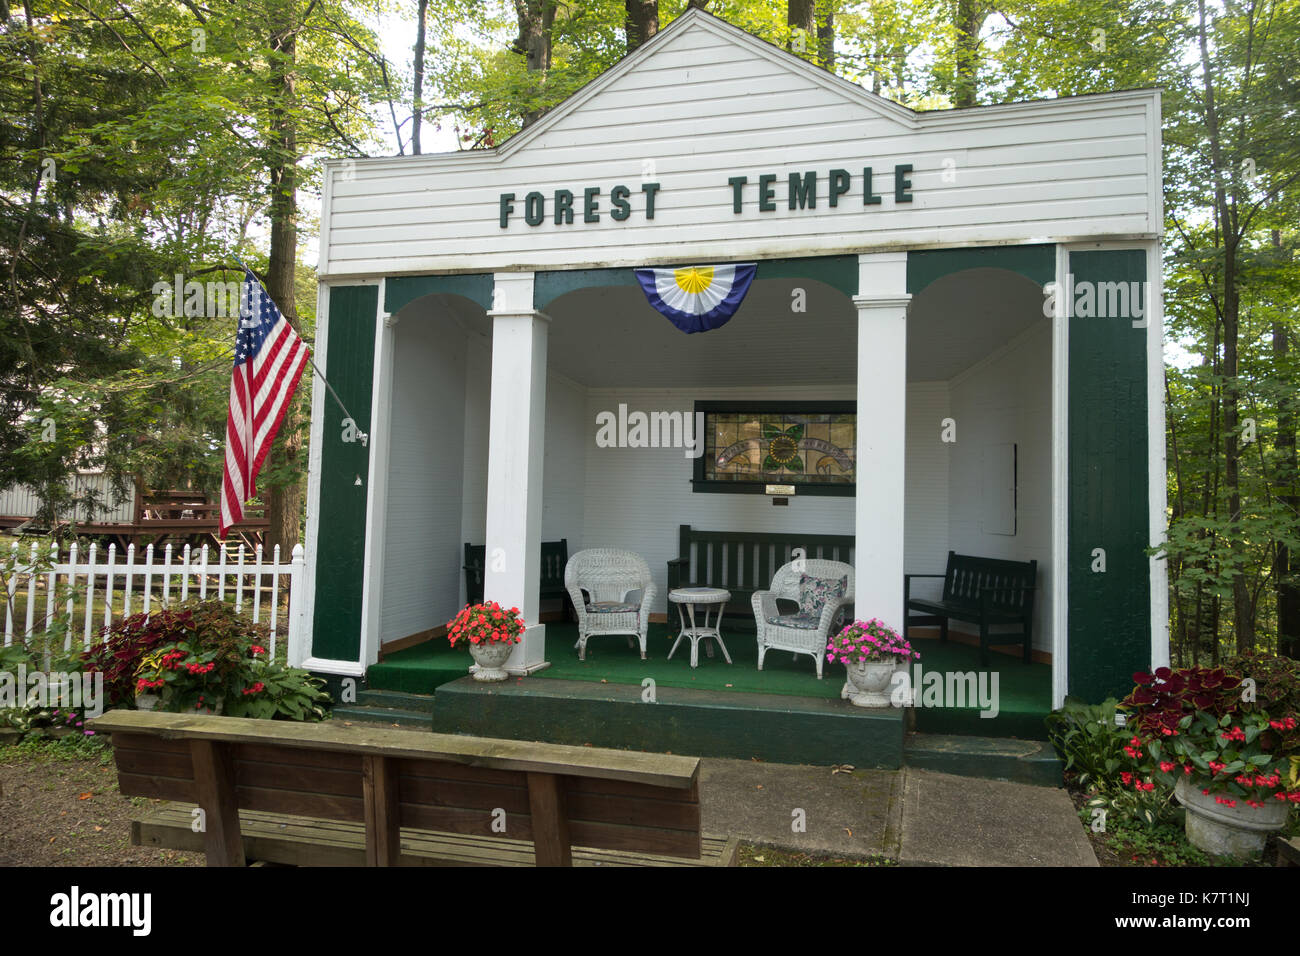 Temple de la forêt à Lilydale Assemblée générale, Cassadaga, New York, USA, Chautauqua Comté Banque D'Images